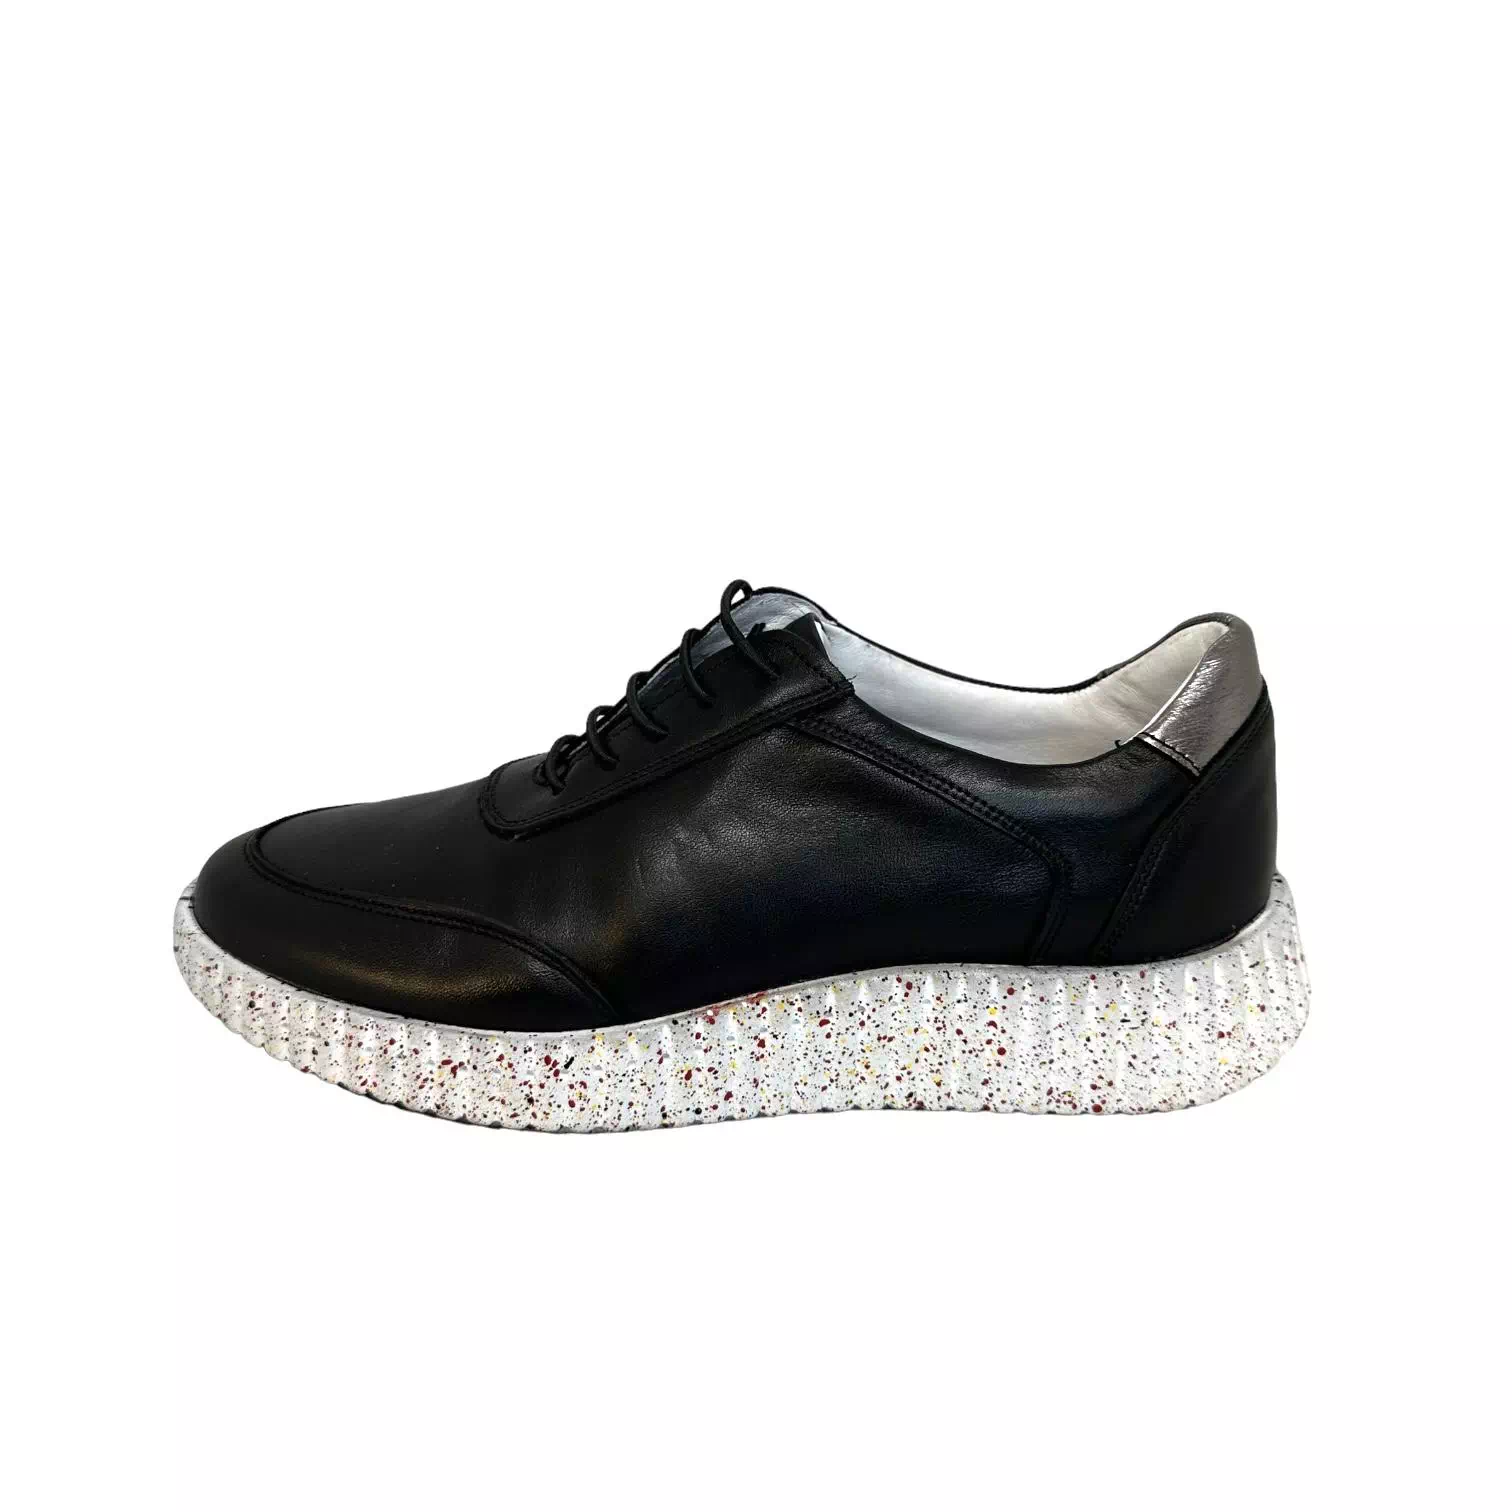 Pantofi negri cu detaliu argintiu si talpa colorata